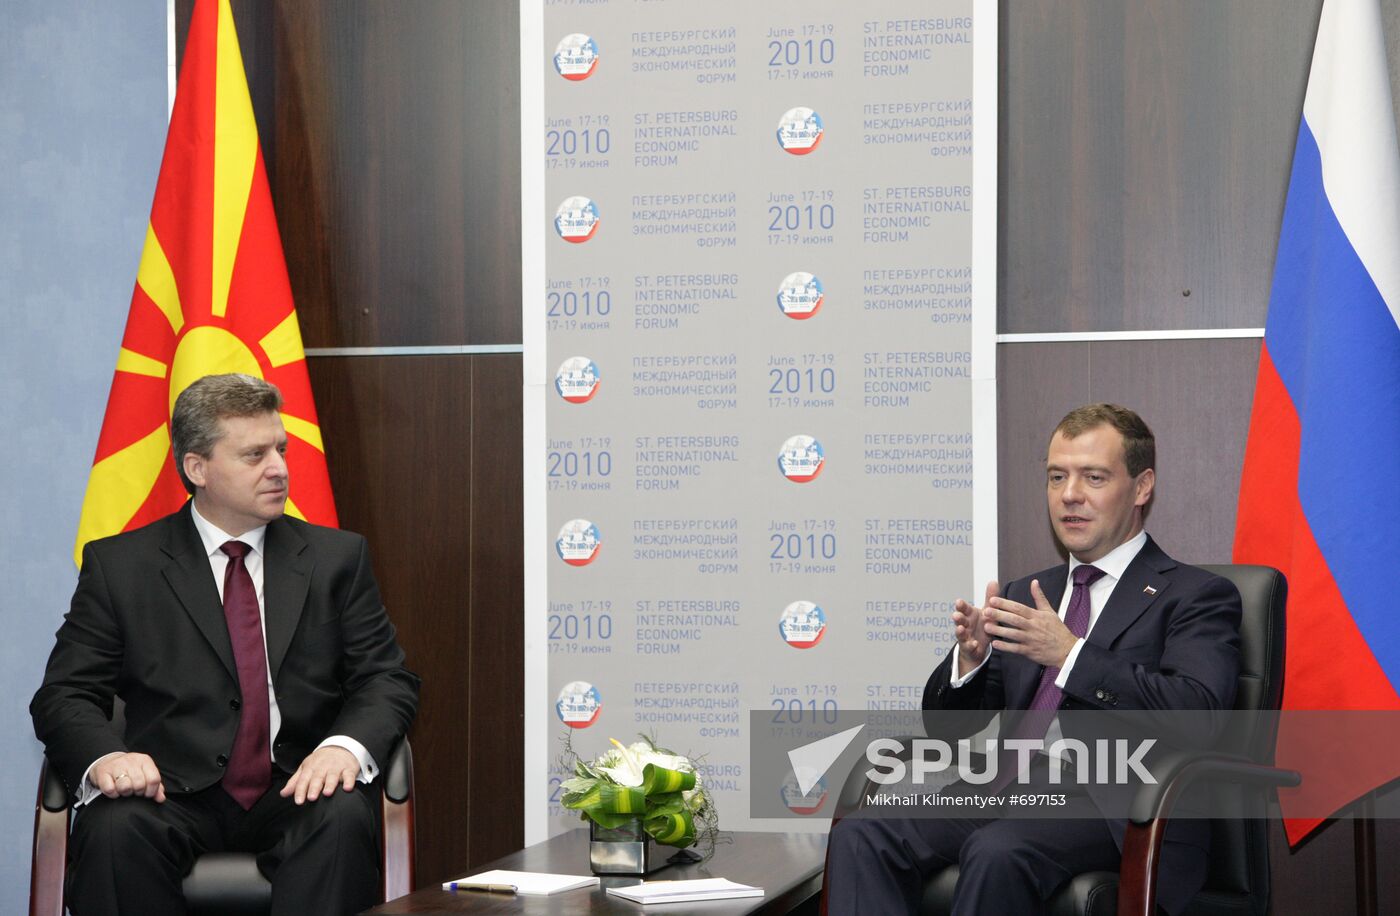 Dmitry Medvedev and Gjorge Ivanov